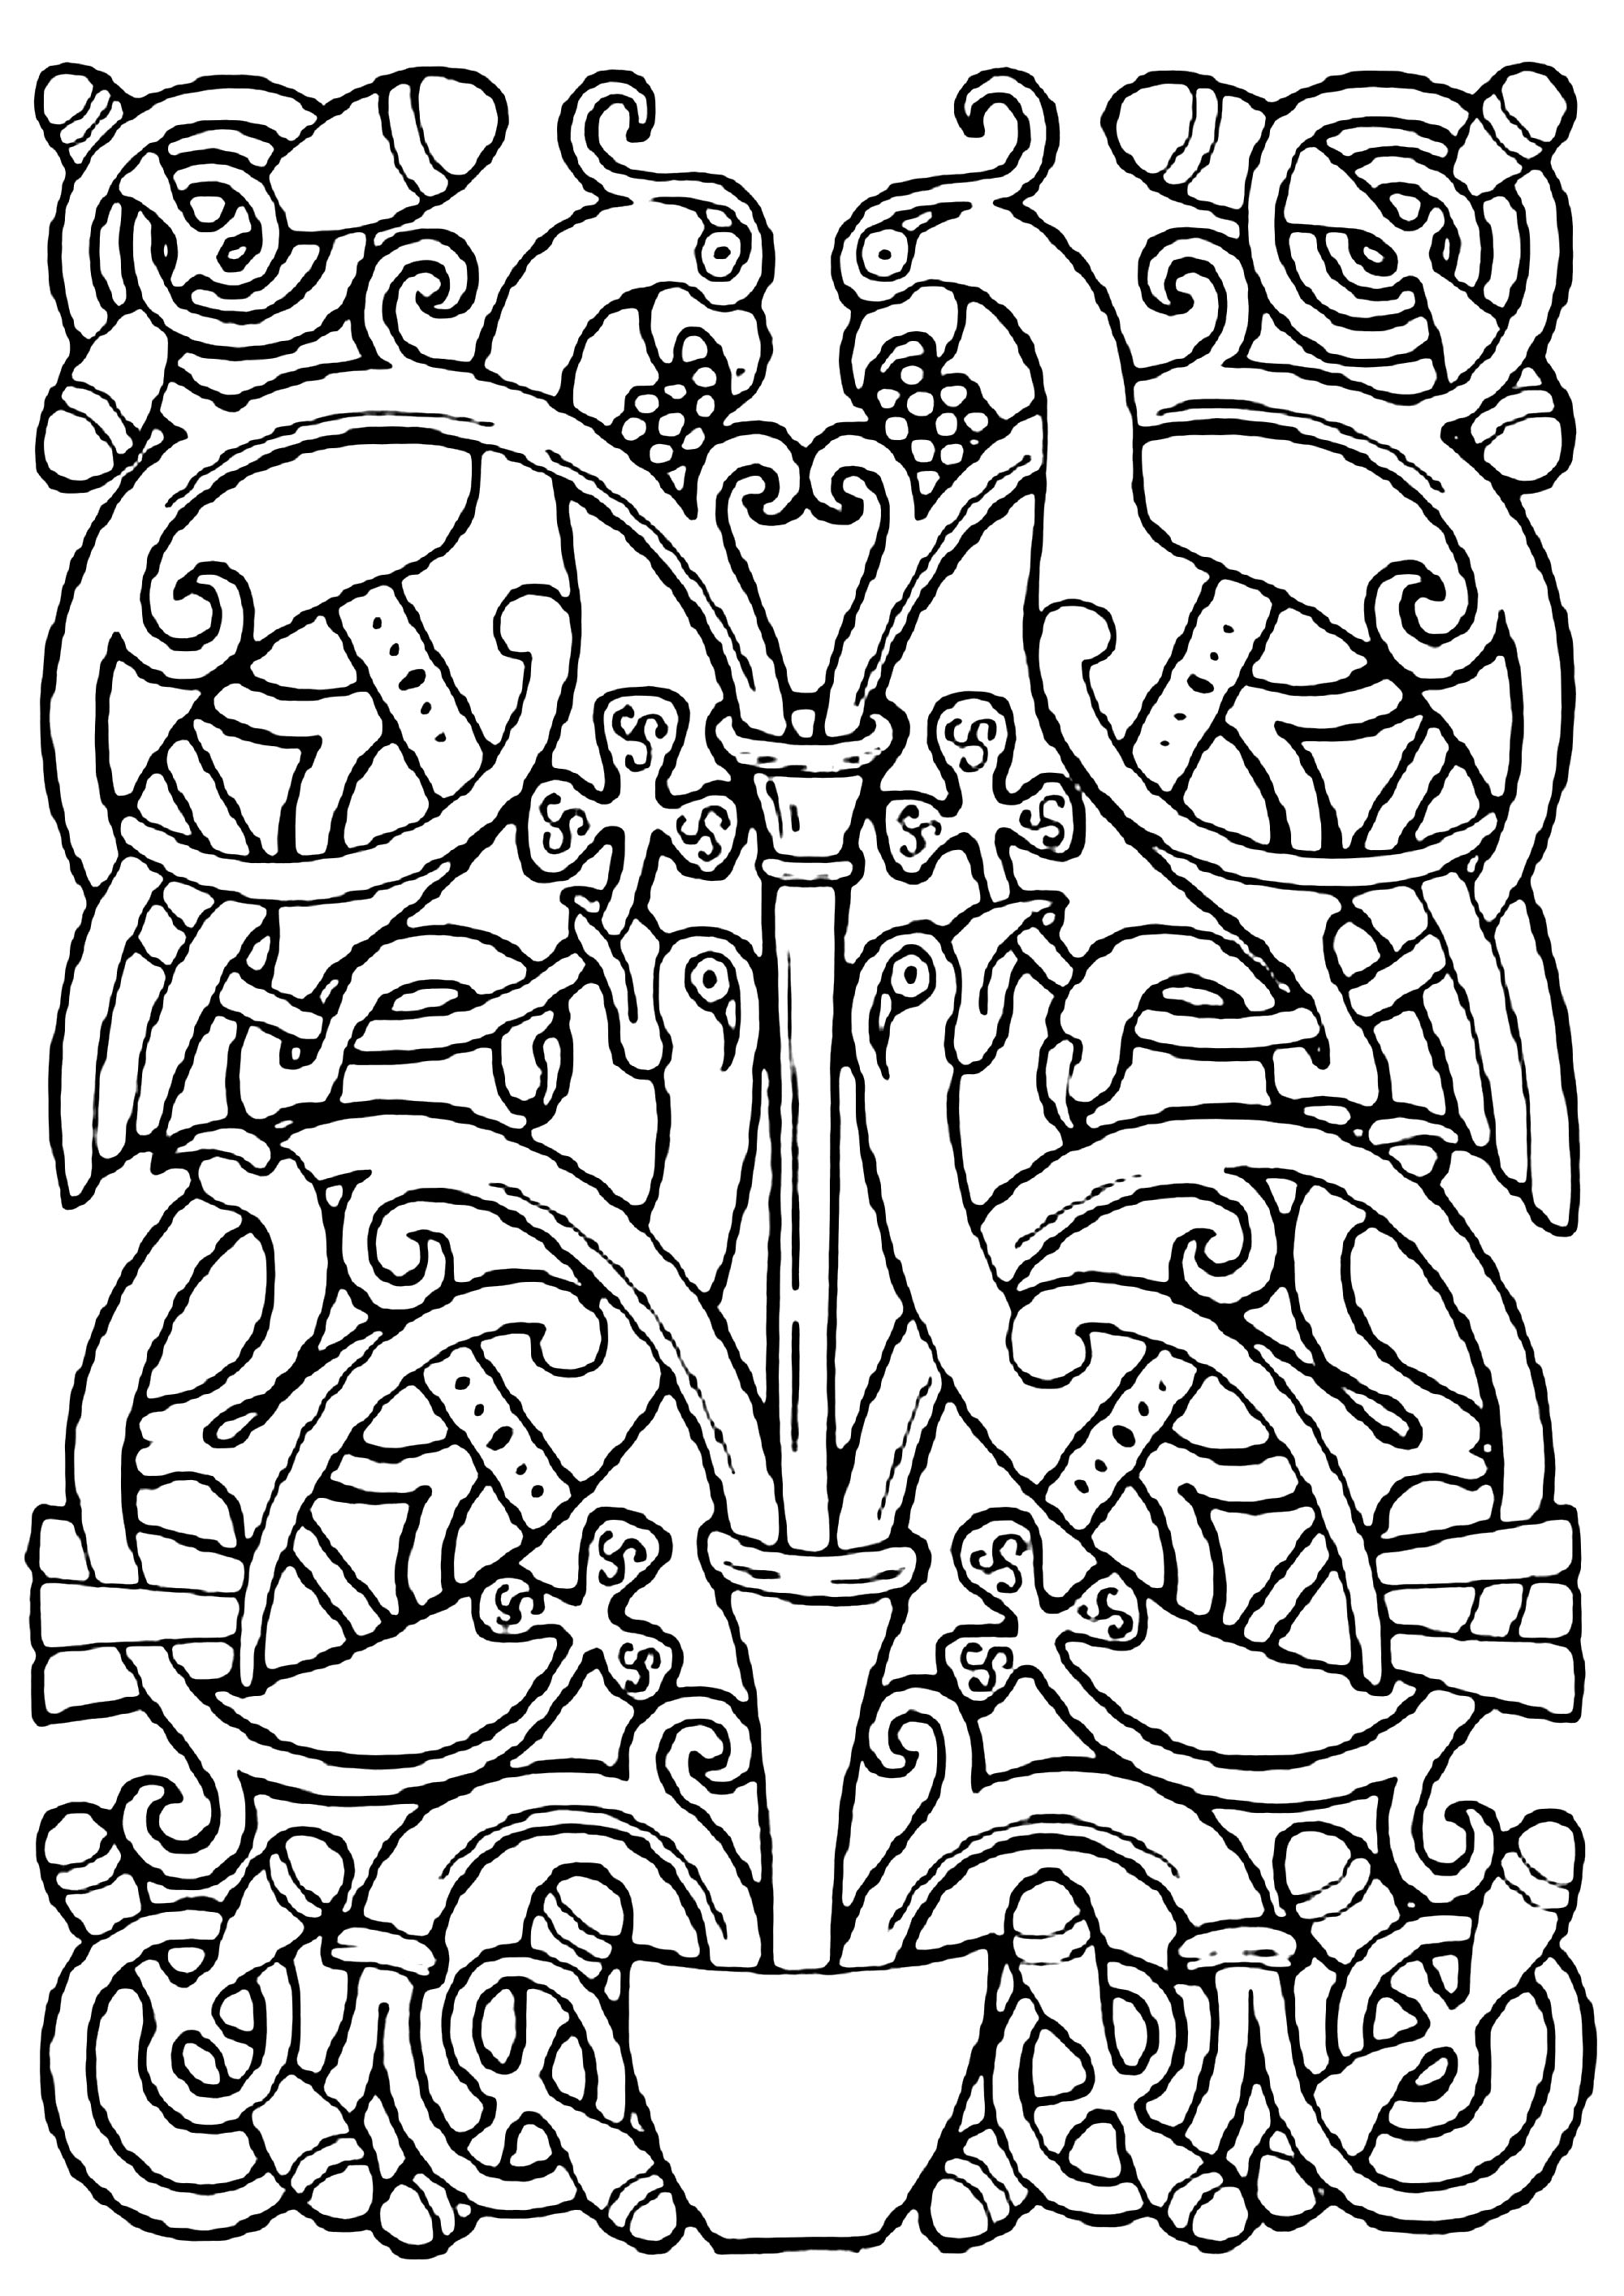 Disegno celtico di uccelli, con motivi celtici intrecciati. Questa illustrazione assomiglia a quelle presenti in manoscritti medievali come il Libro di Kells.